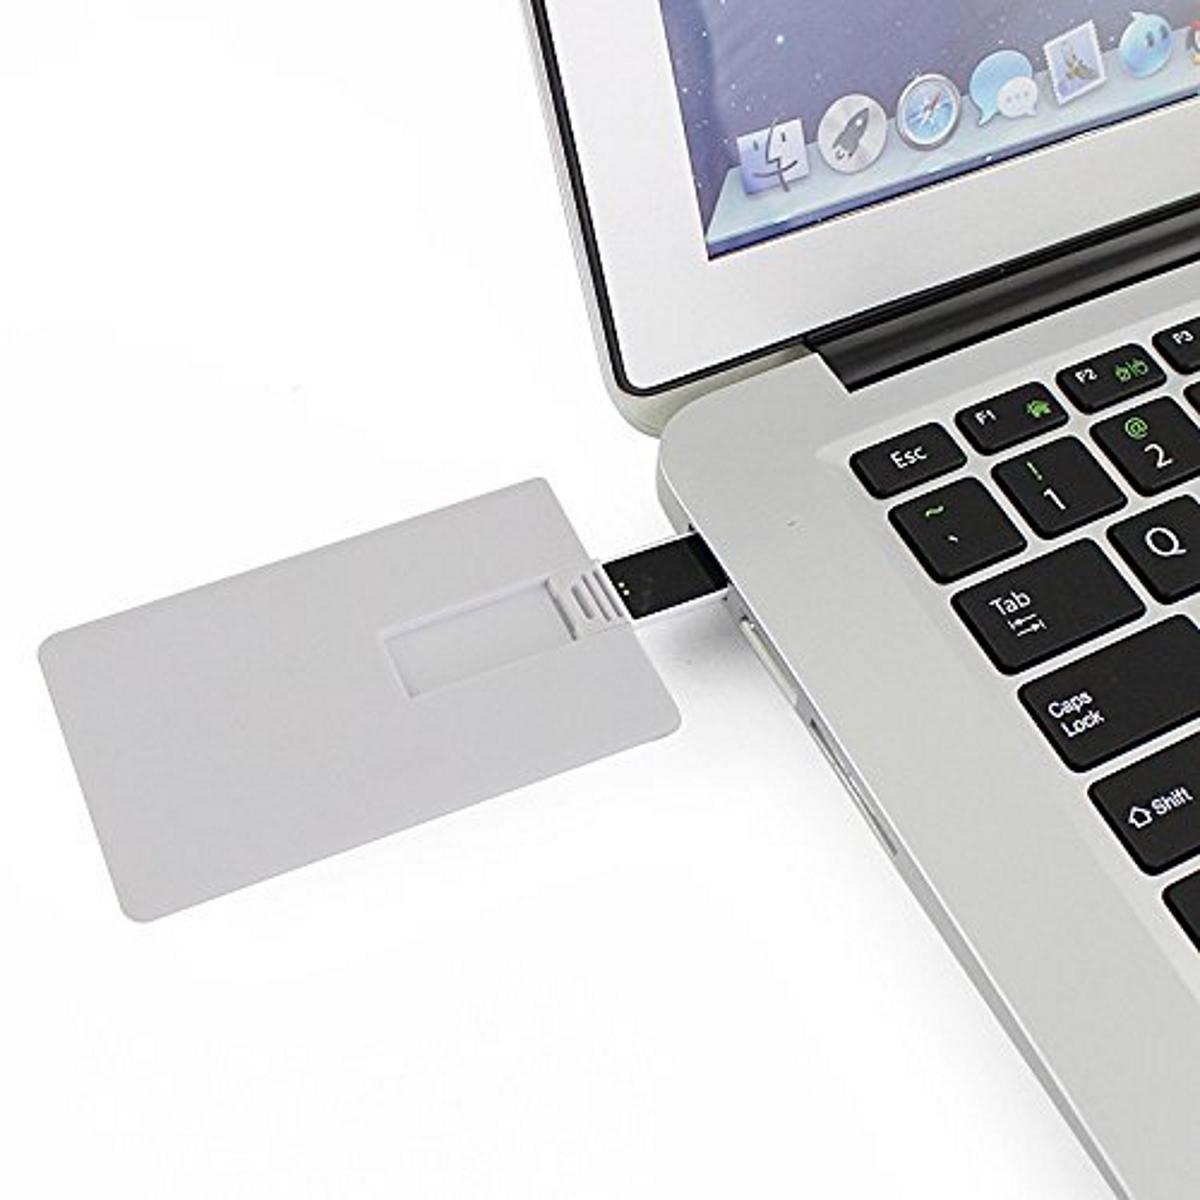 ® USB-Stick USB 16 GERMANY GB) (Weiss, Kreditkarte